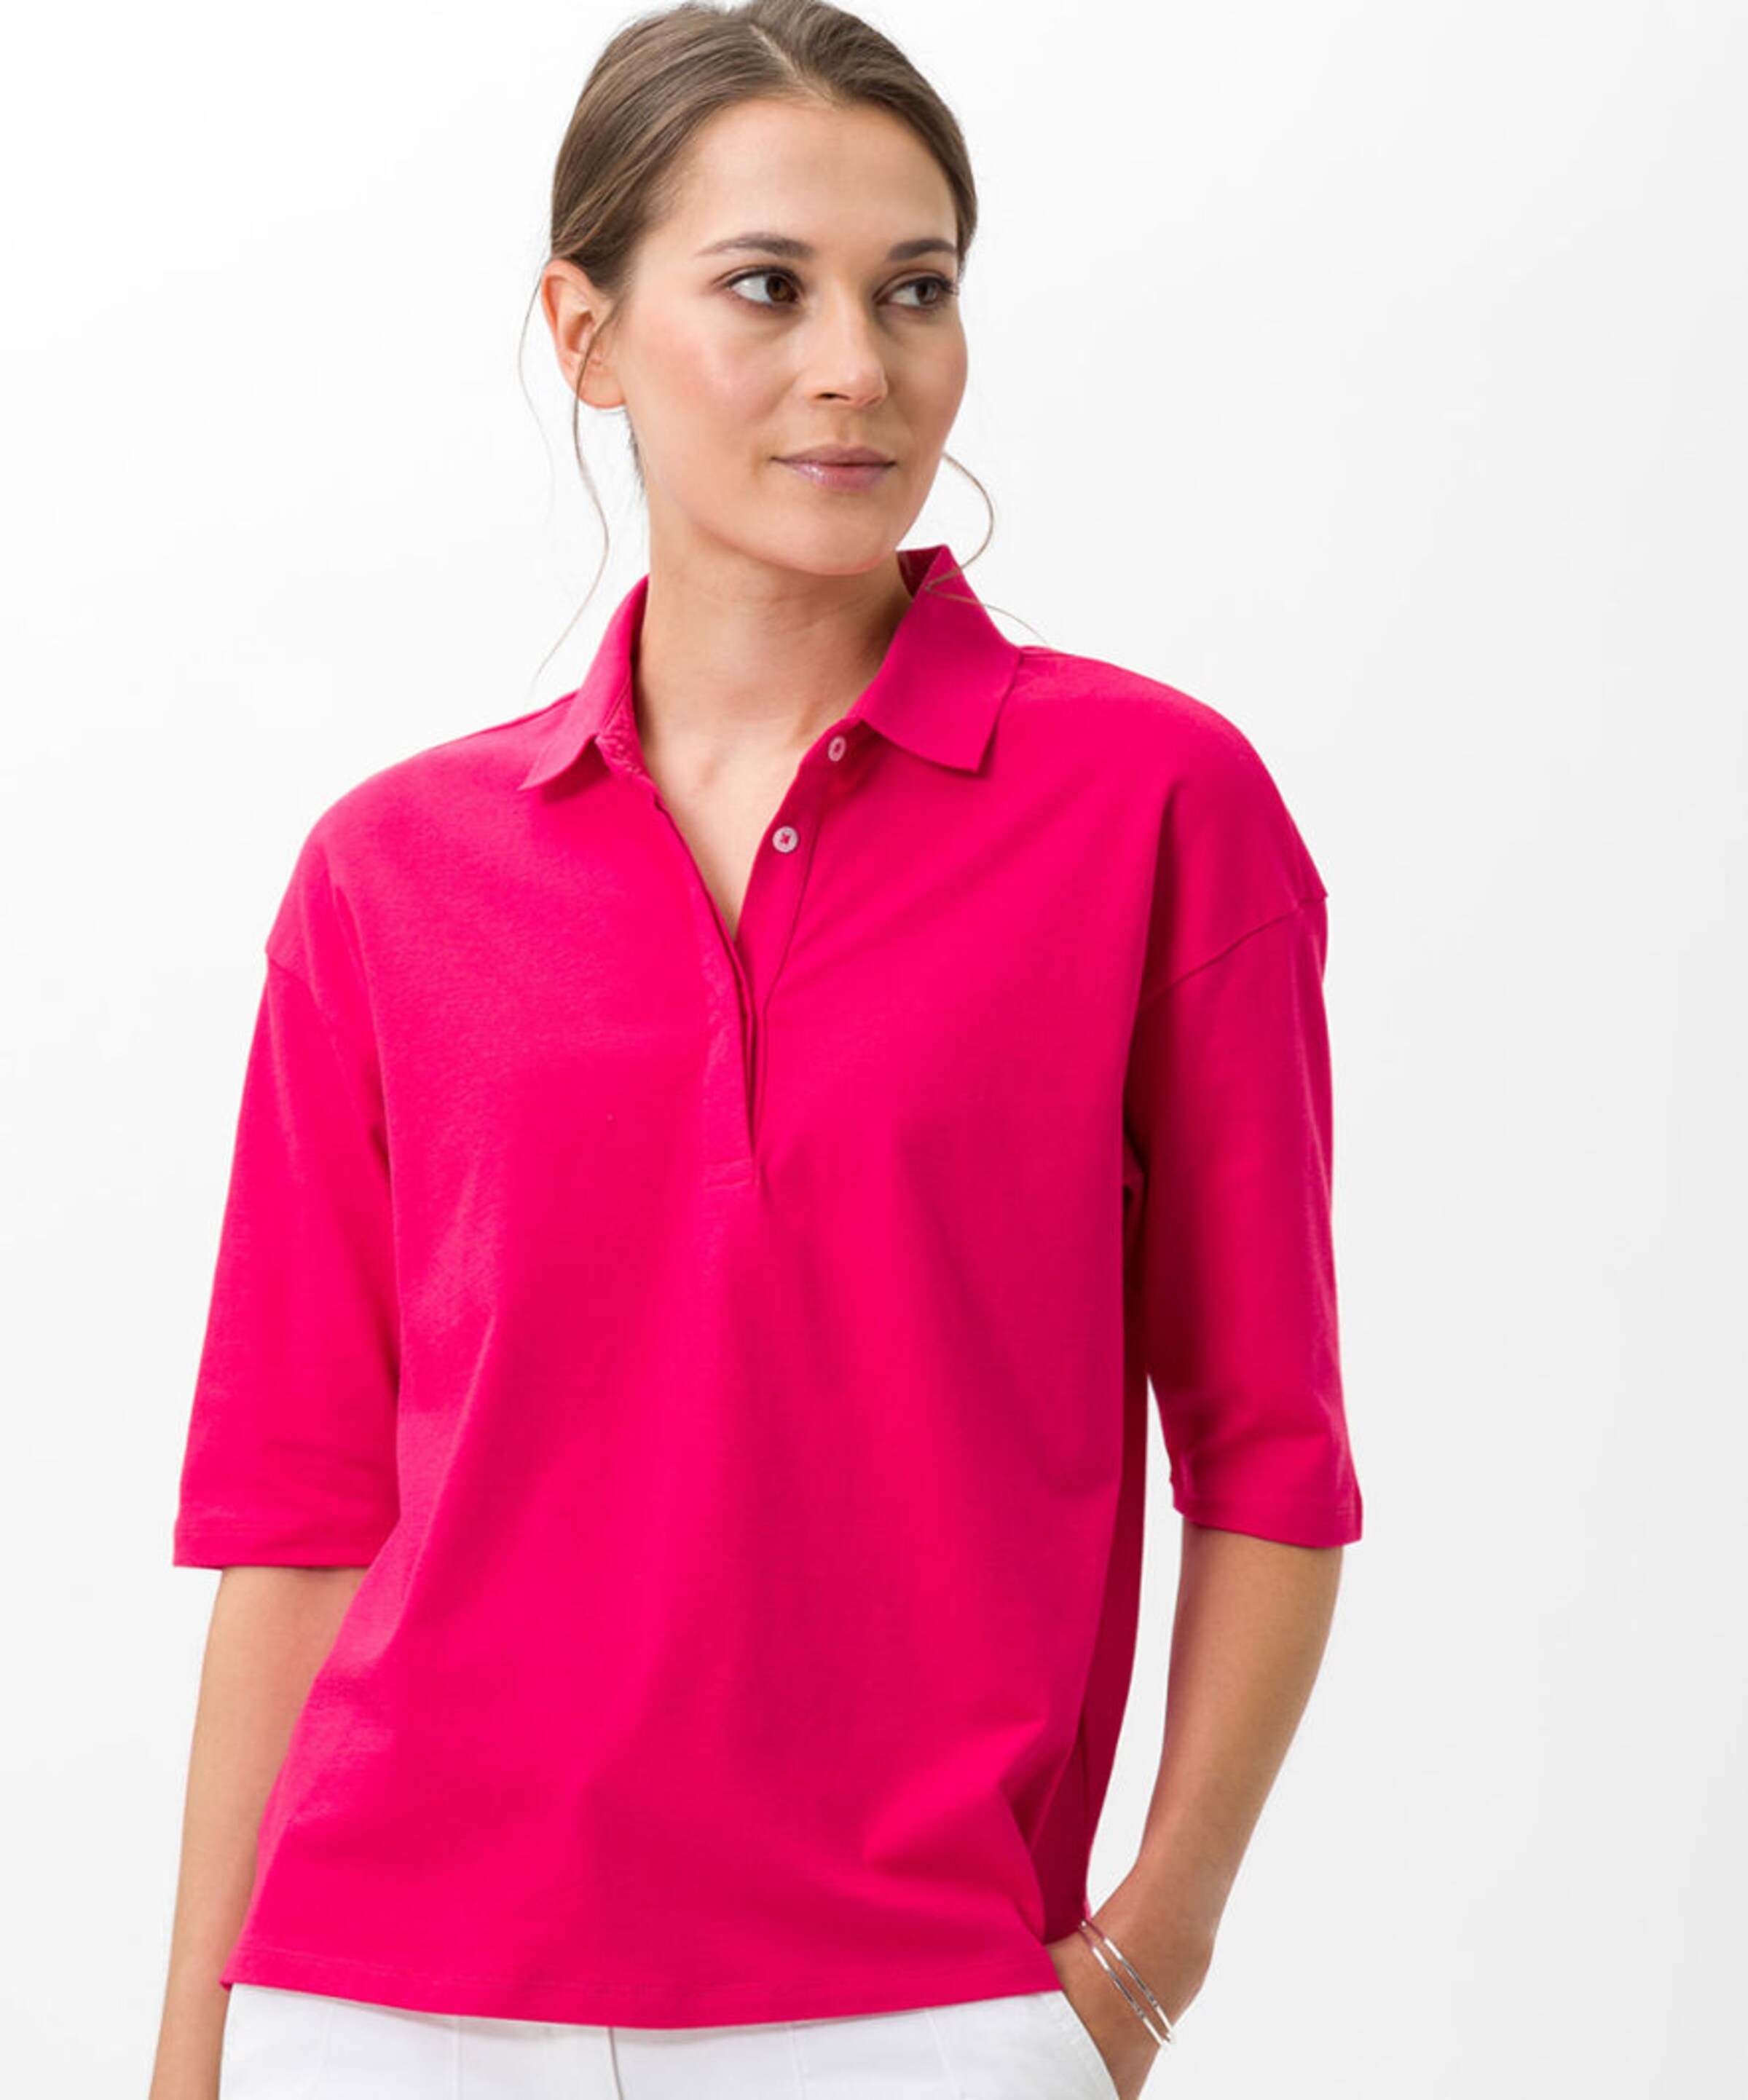 Frauen Shirts & Tops BRAX Poloshirt in Neonpink - FP79671